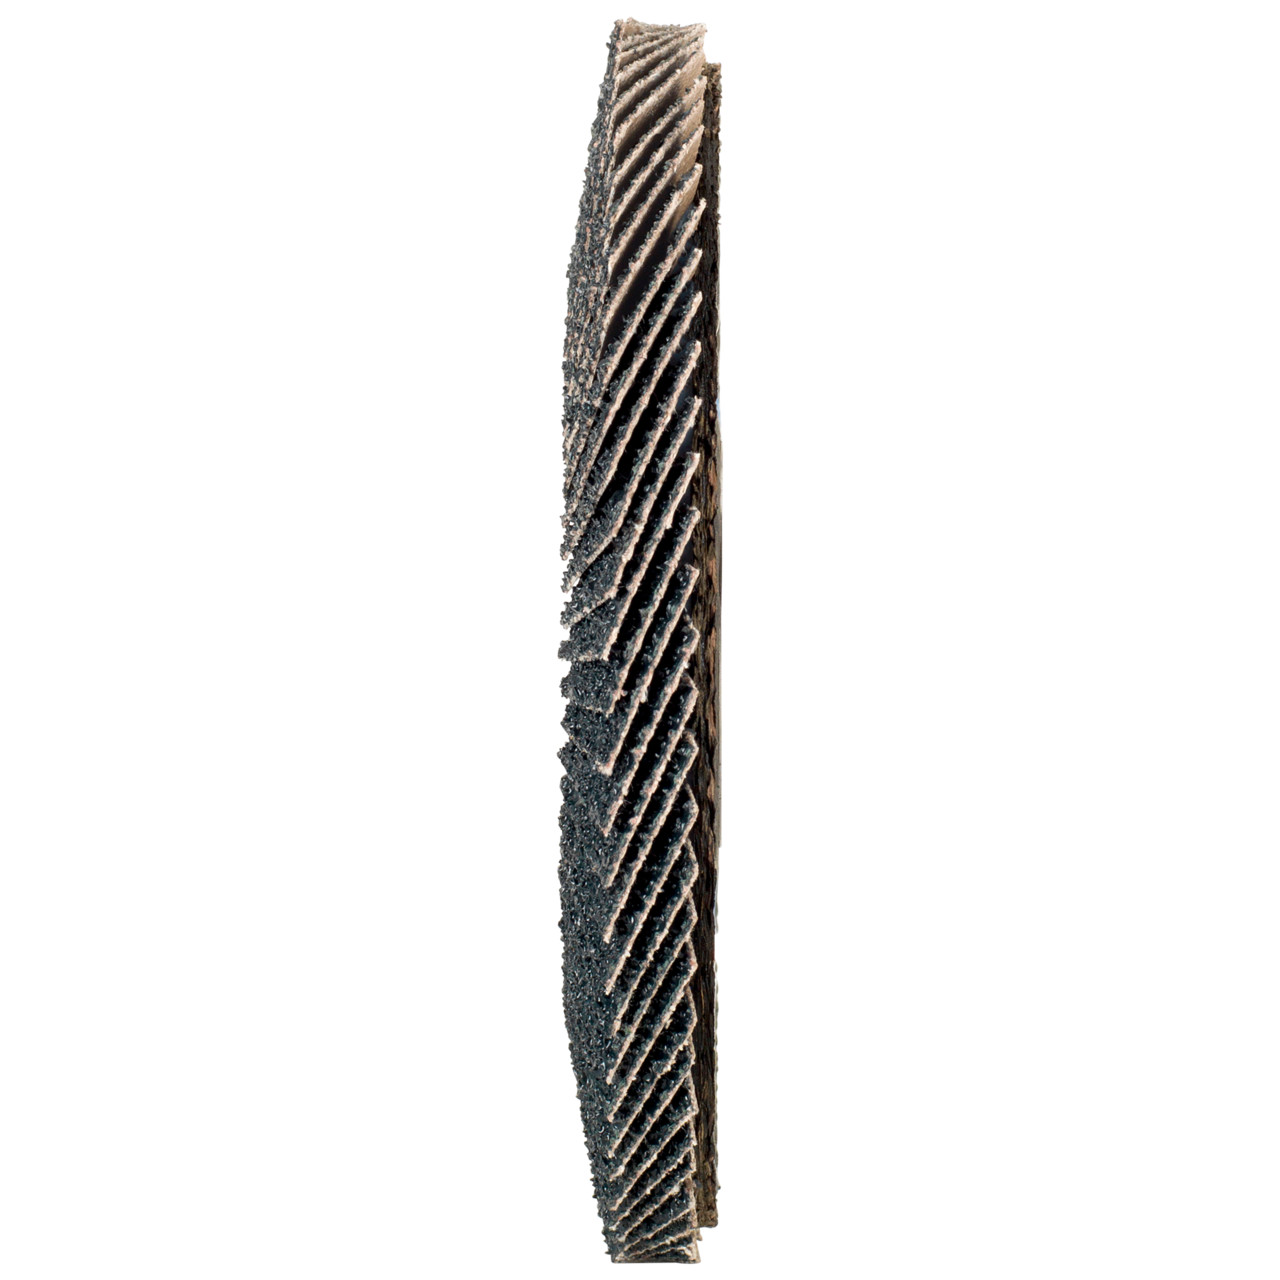 Rondella dentata Tyrolit DxH 115x22.2 2in1 per acciaio e acciaio inox, P80, forma: 27A - versione a gomito (versione con corpo portante in fibra di vetro), Art. 668649